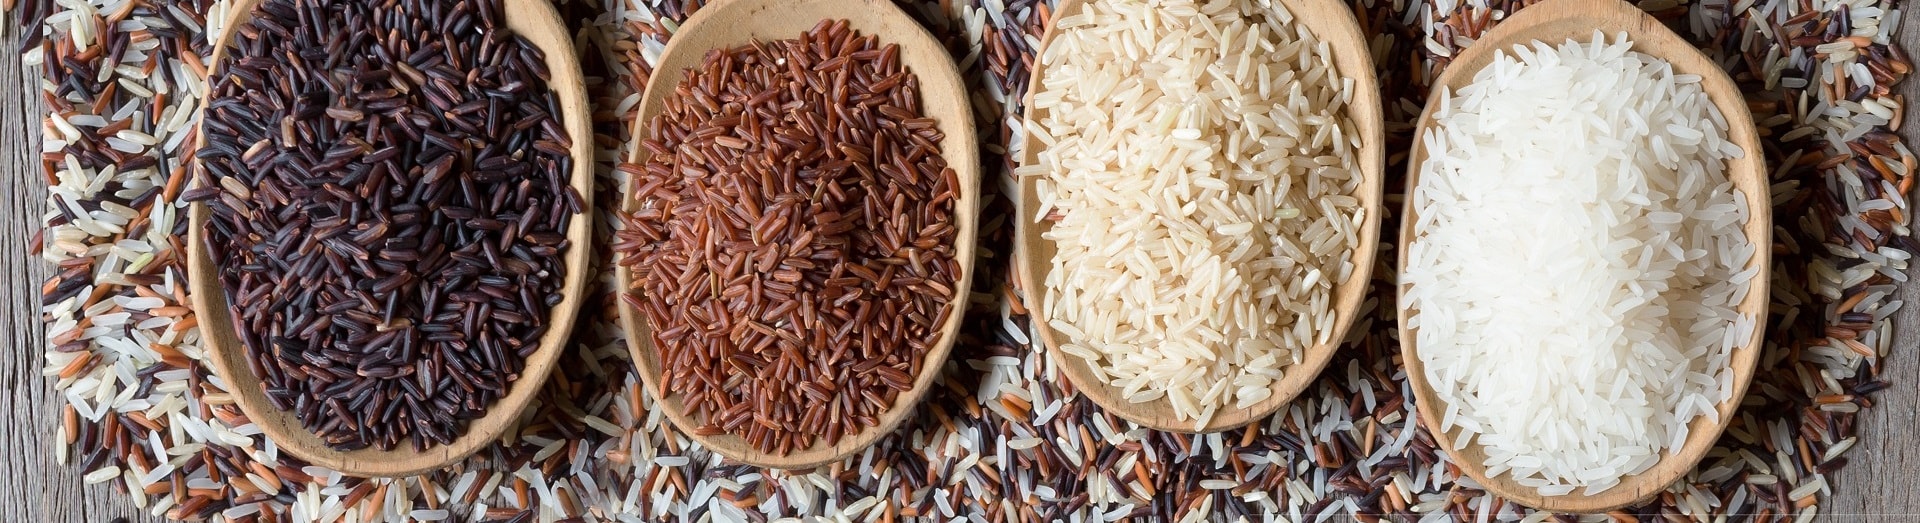 Röntgeninspectie van rijst in de levensmiddelenindustrie